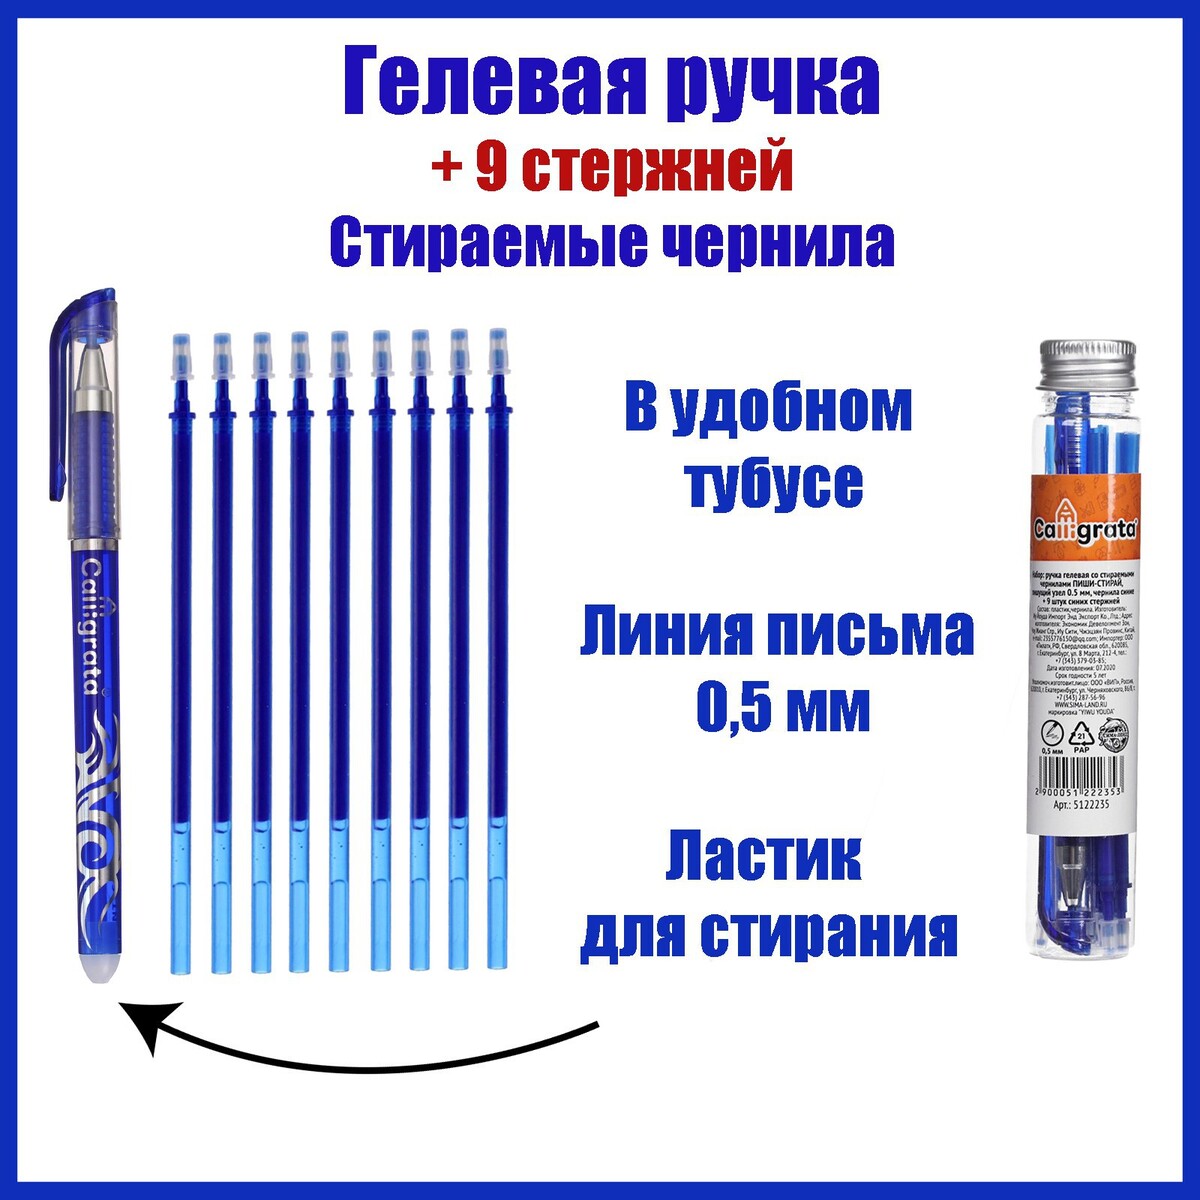 Набор ручка гелевая со стираемыми чернилами, пишущий узел 0.5 мм, чернила синие+9 синих стержней набор ручек шариковых 4 штуки стамм офис узел 0 7 1 0 мм чернила синие с европодвесом